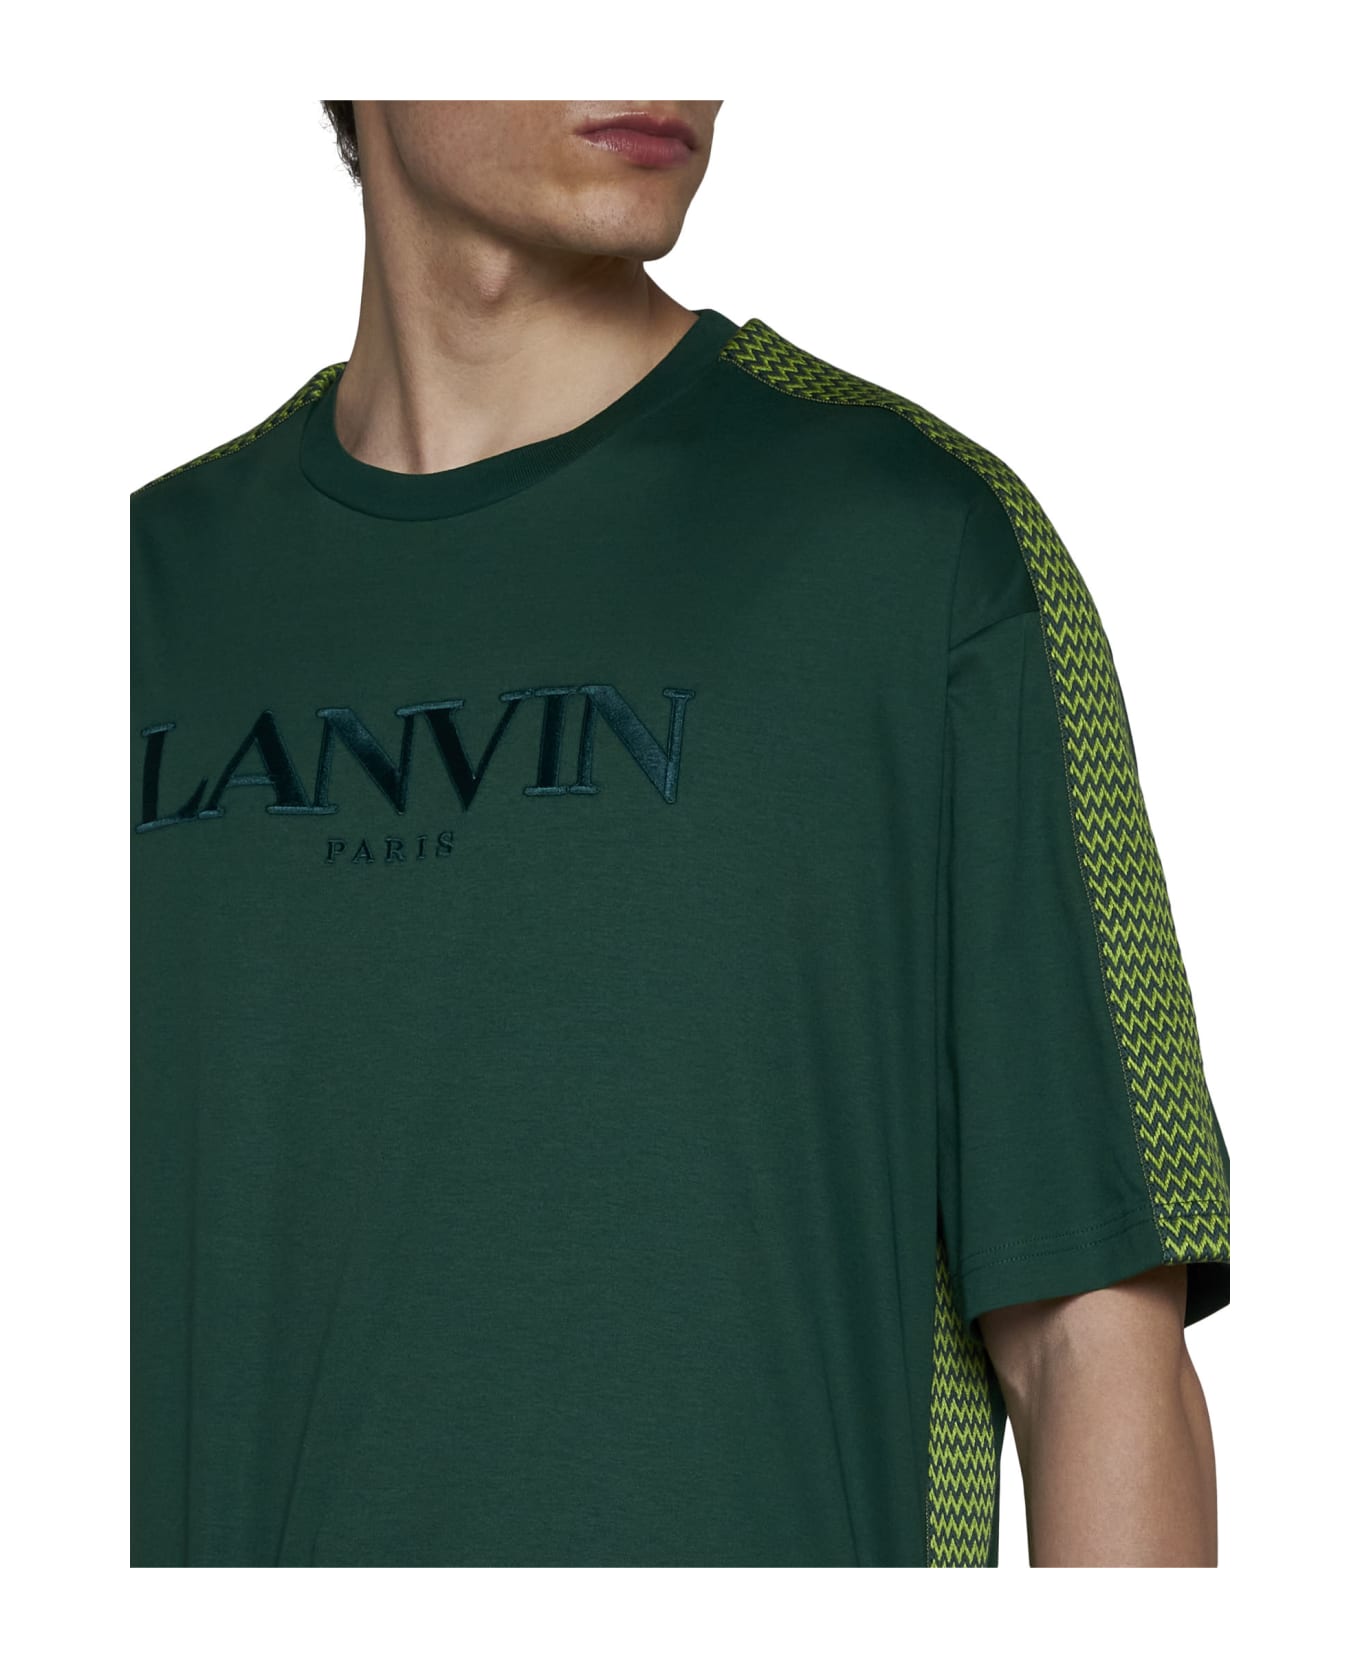 Lanvin T-Shirt - Bottle